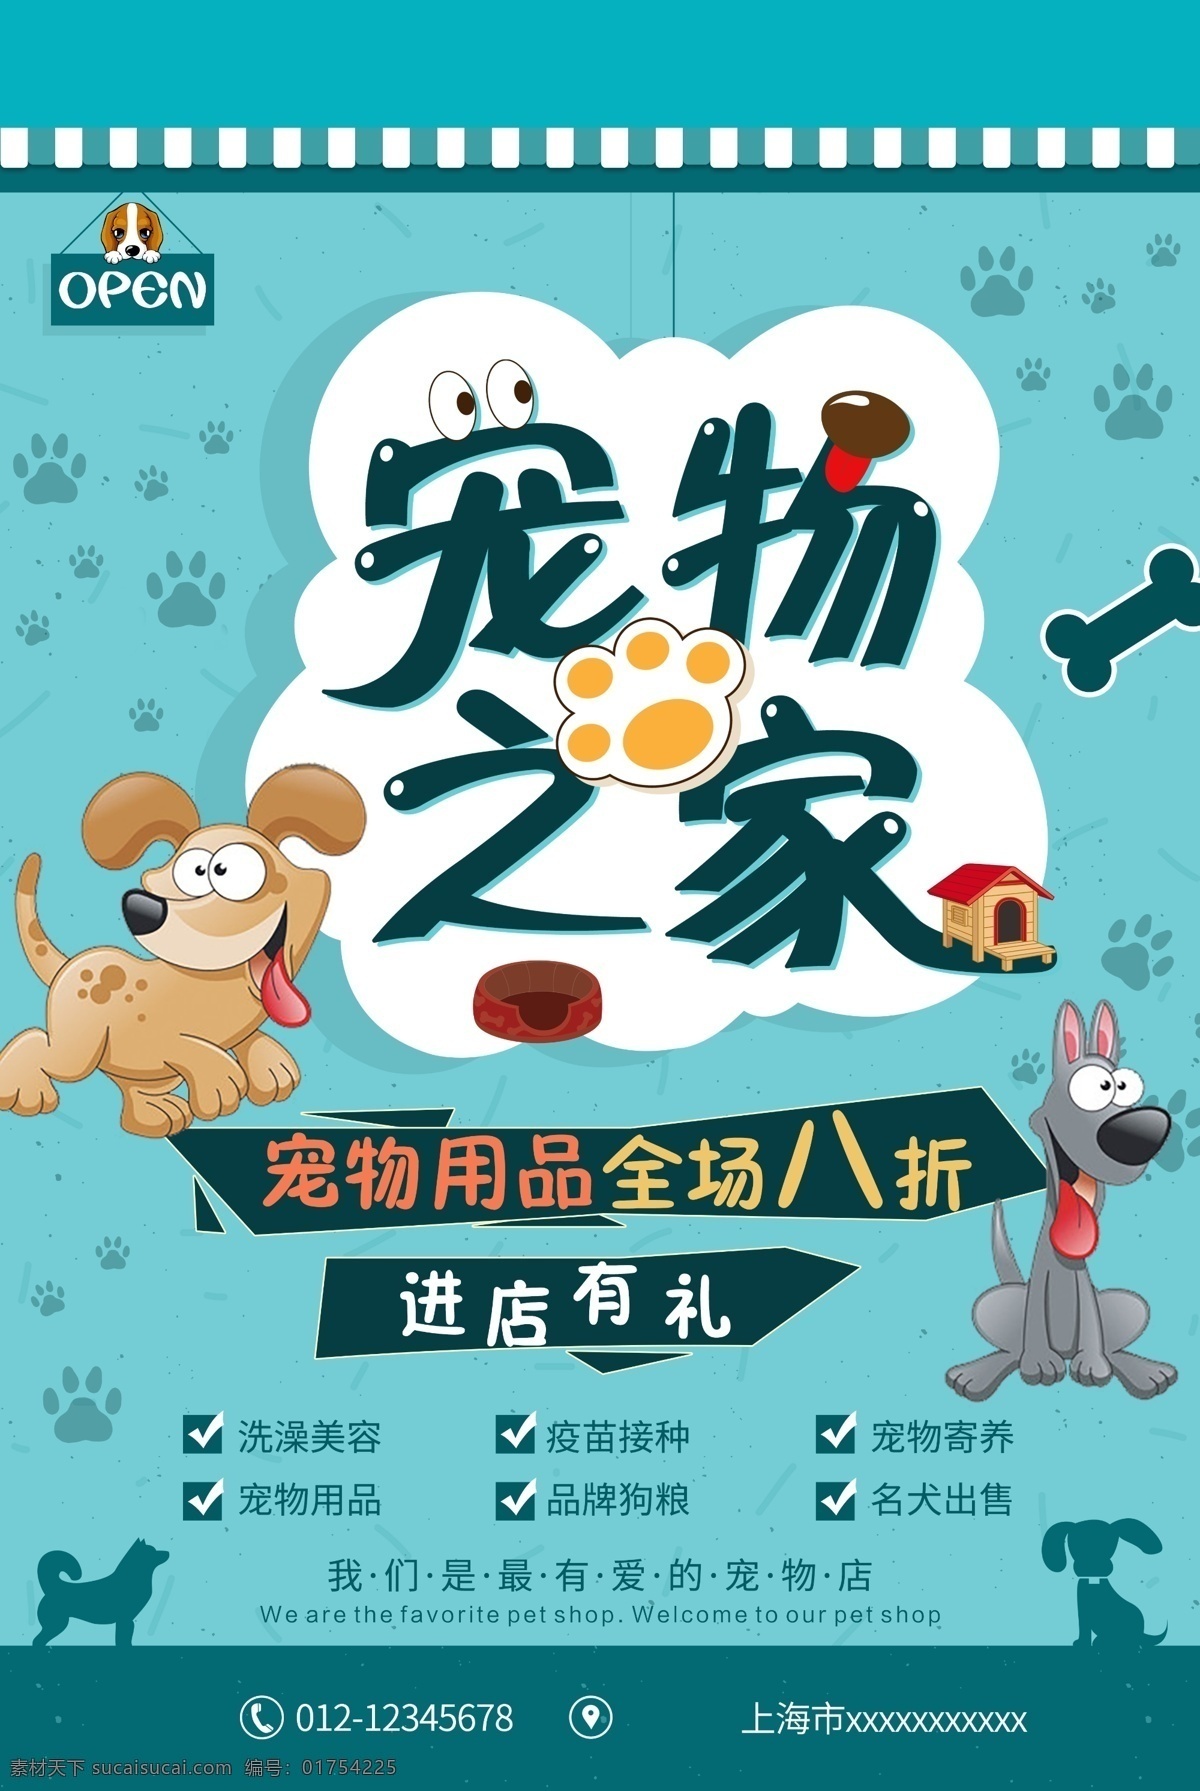 宠物之家图片 宠物店 宠物医院 宠物寄养 宠物海报 海报